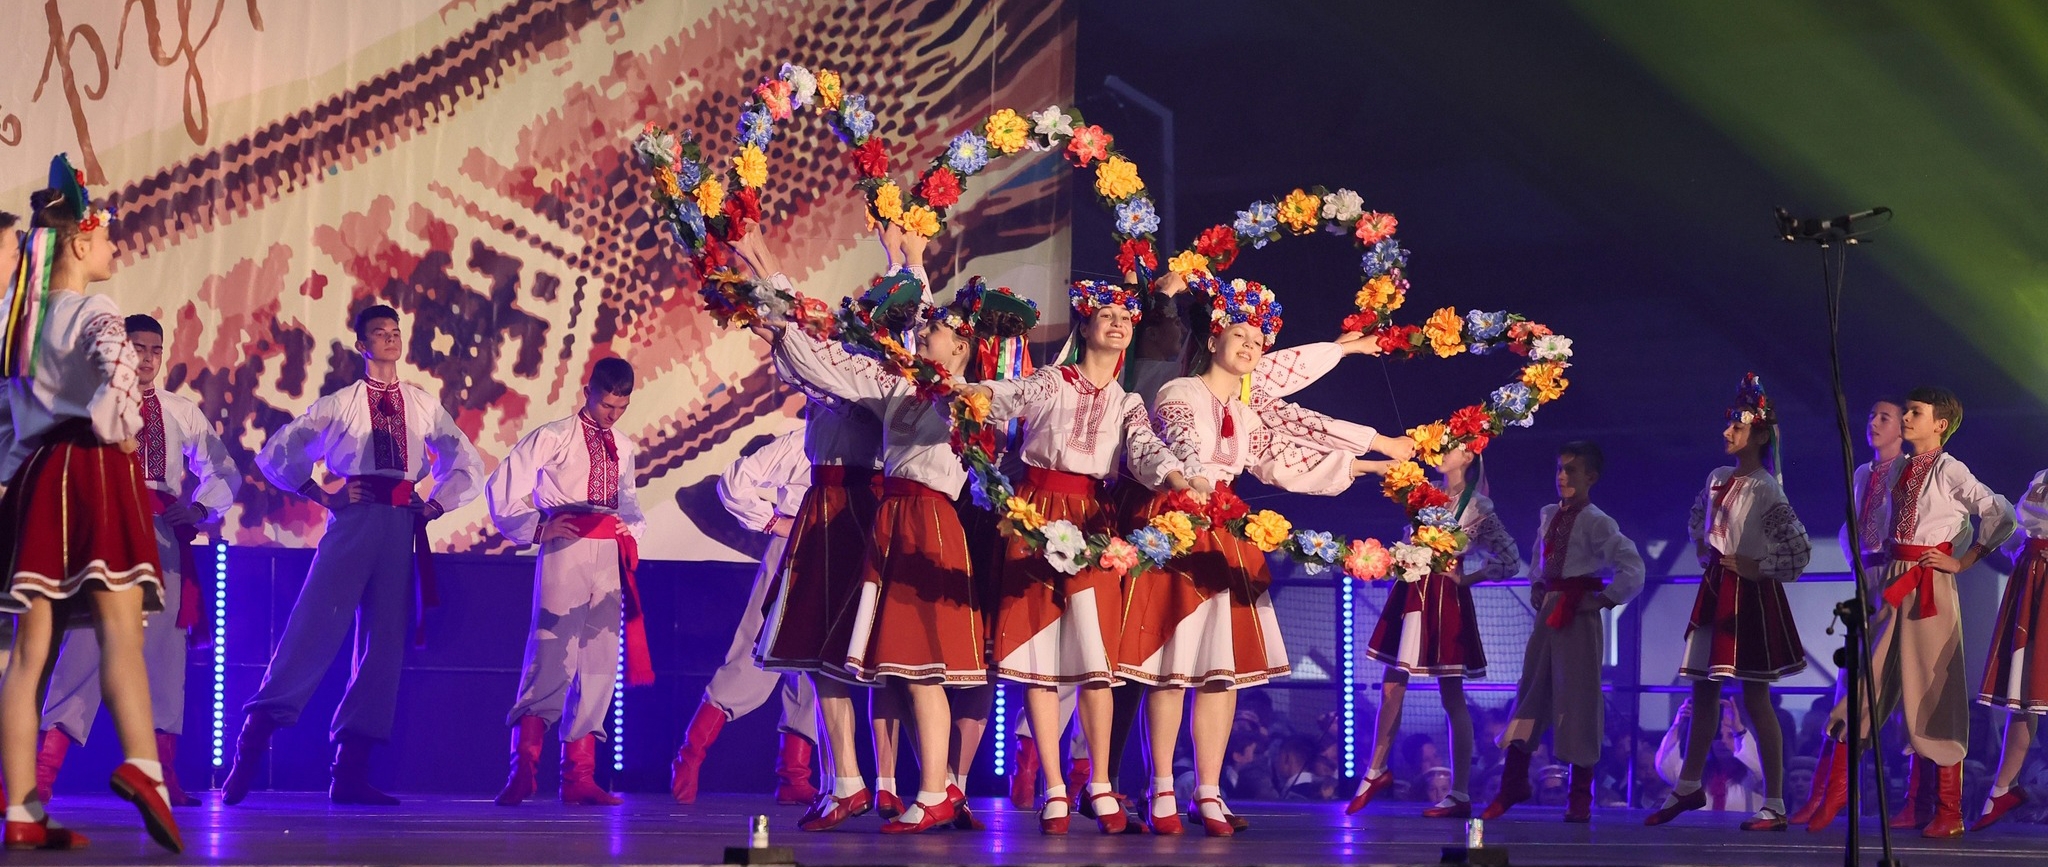 За три дні юні танцюристи з Вінниці дали вісім концертів у Литві